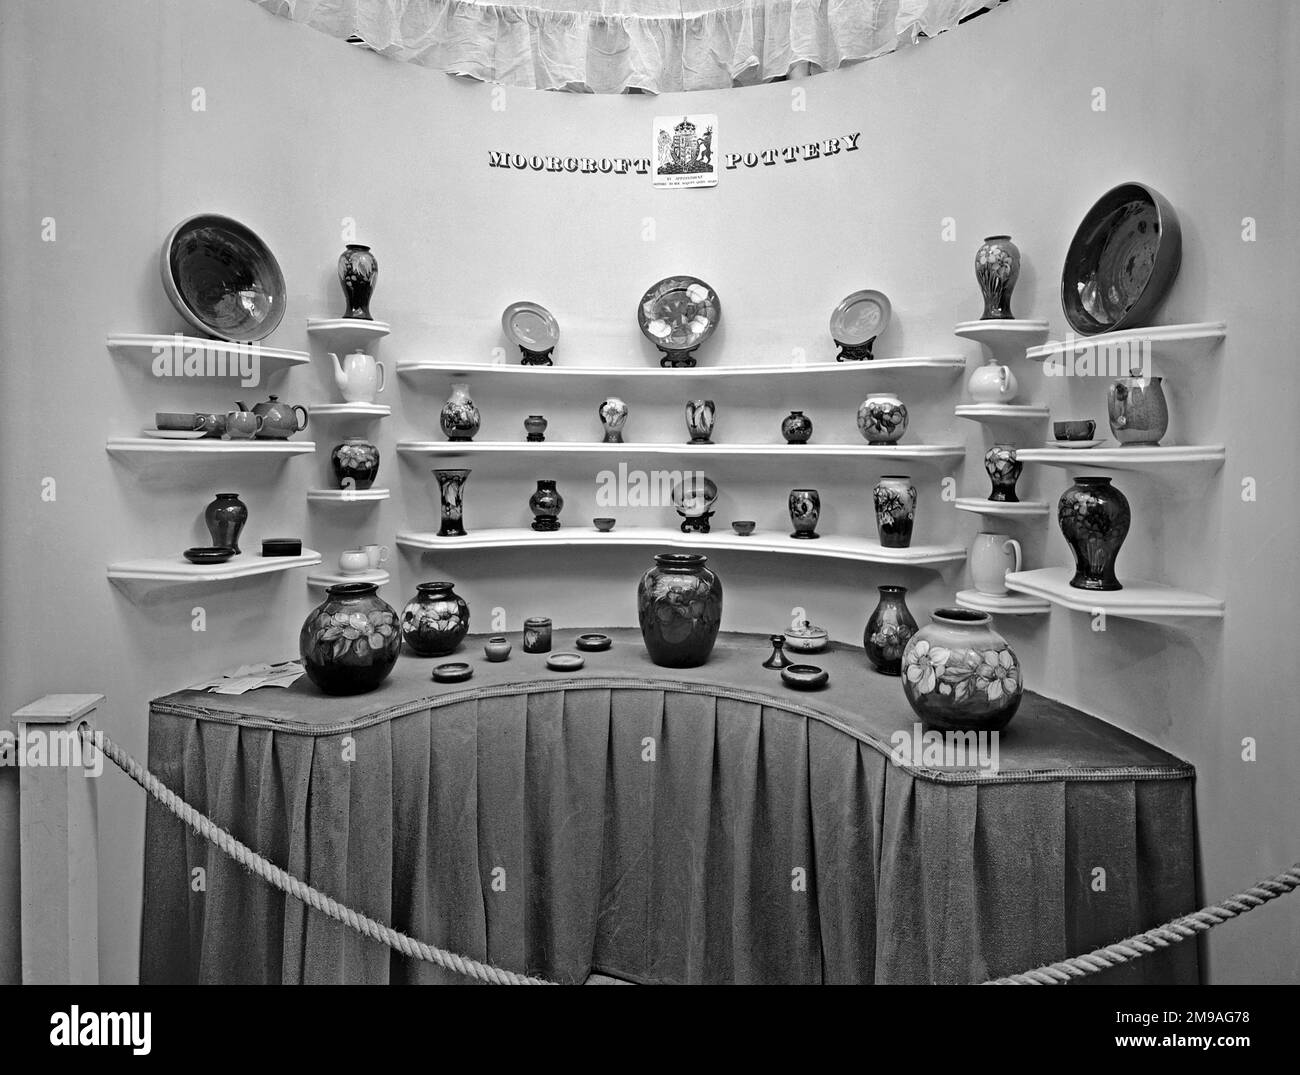 The British Industries Fair - vom 5. Bis 16. Mai 1947 in Olympia und Earls Court, London, abgehalten. Organisiert von der Exportförderungsabteilung des Handelsamtes. Stockfoto